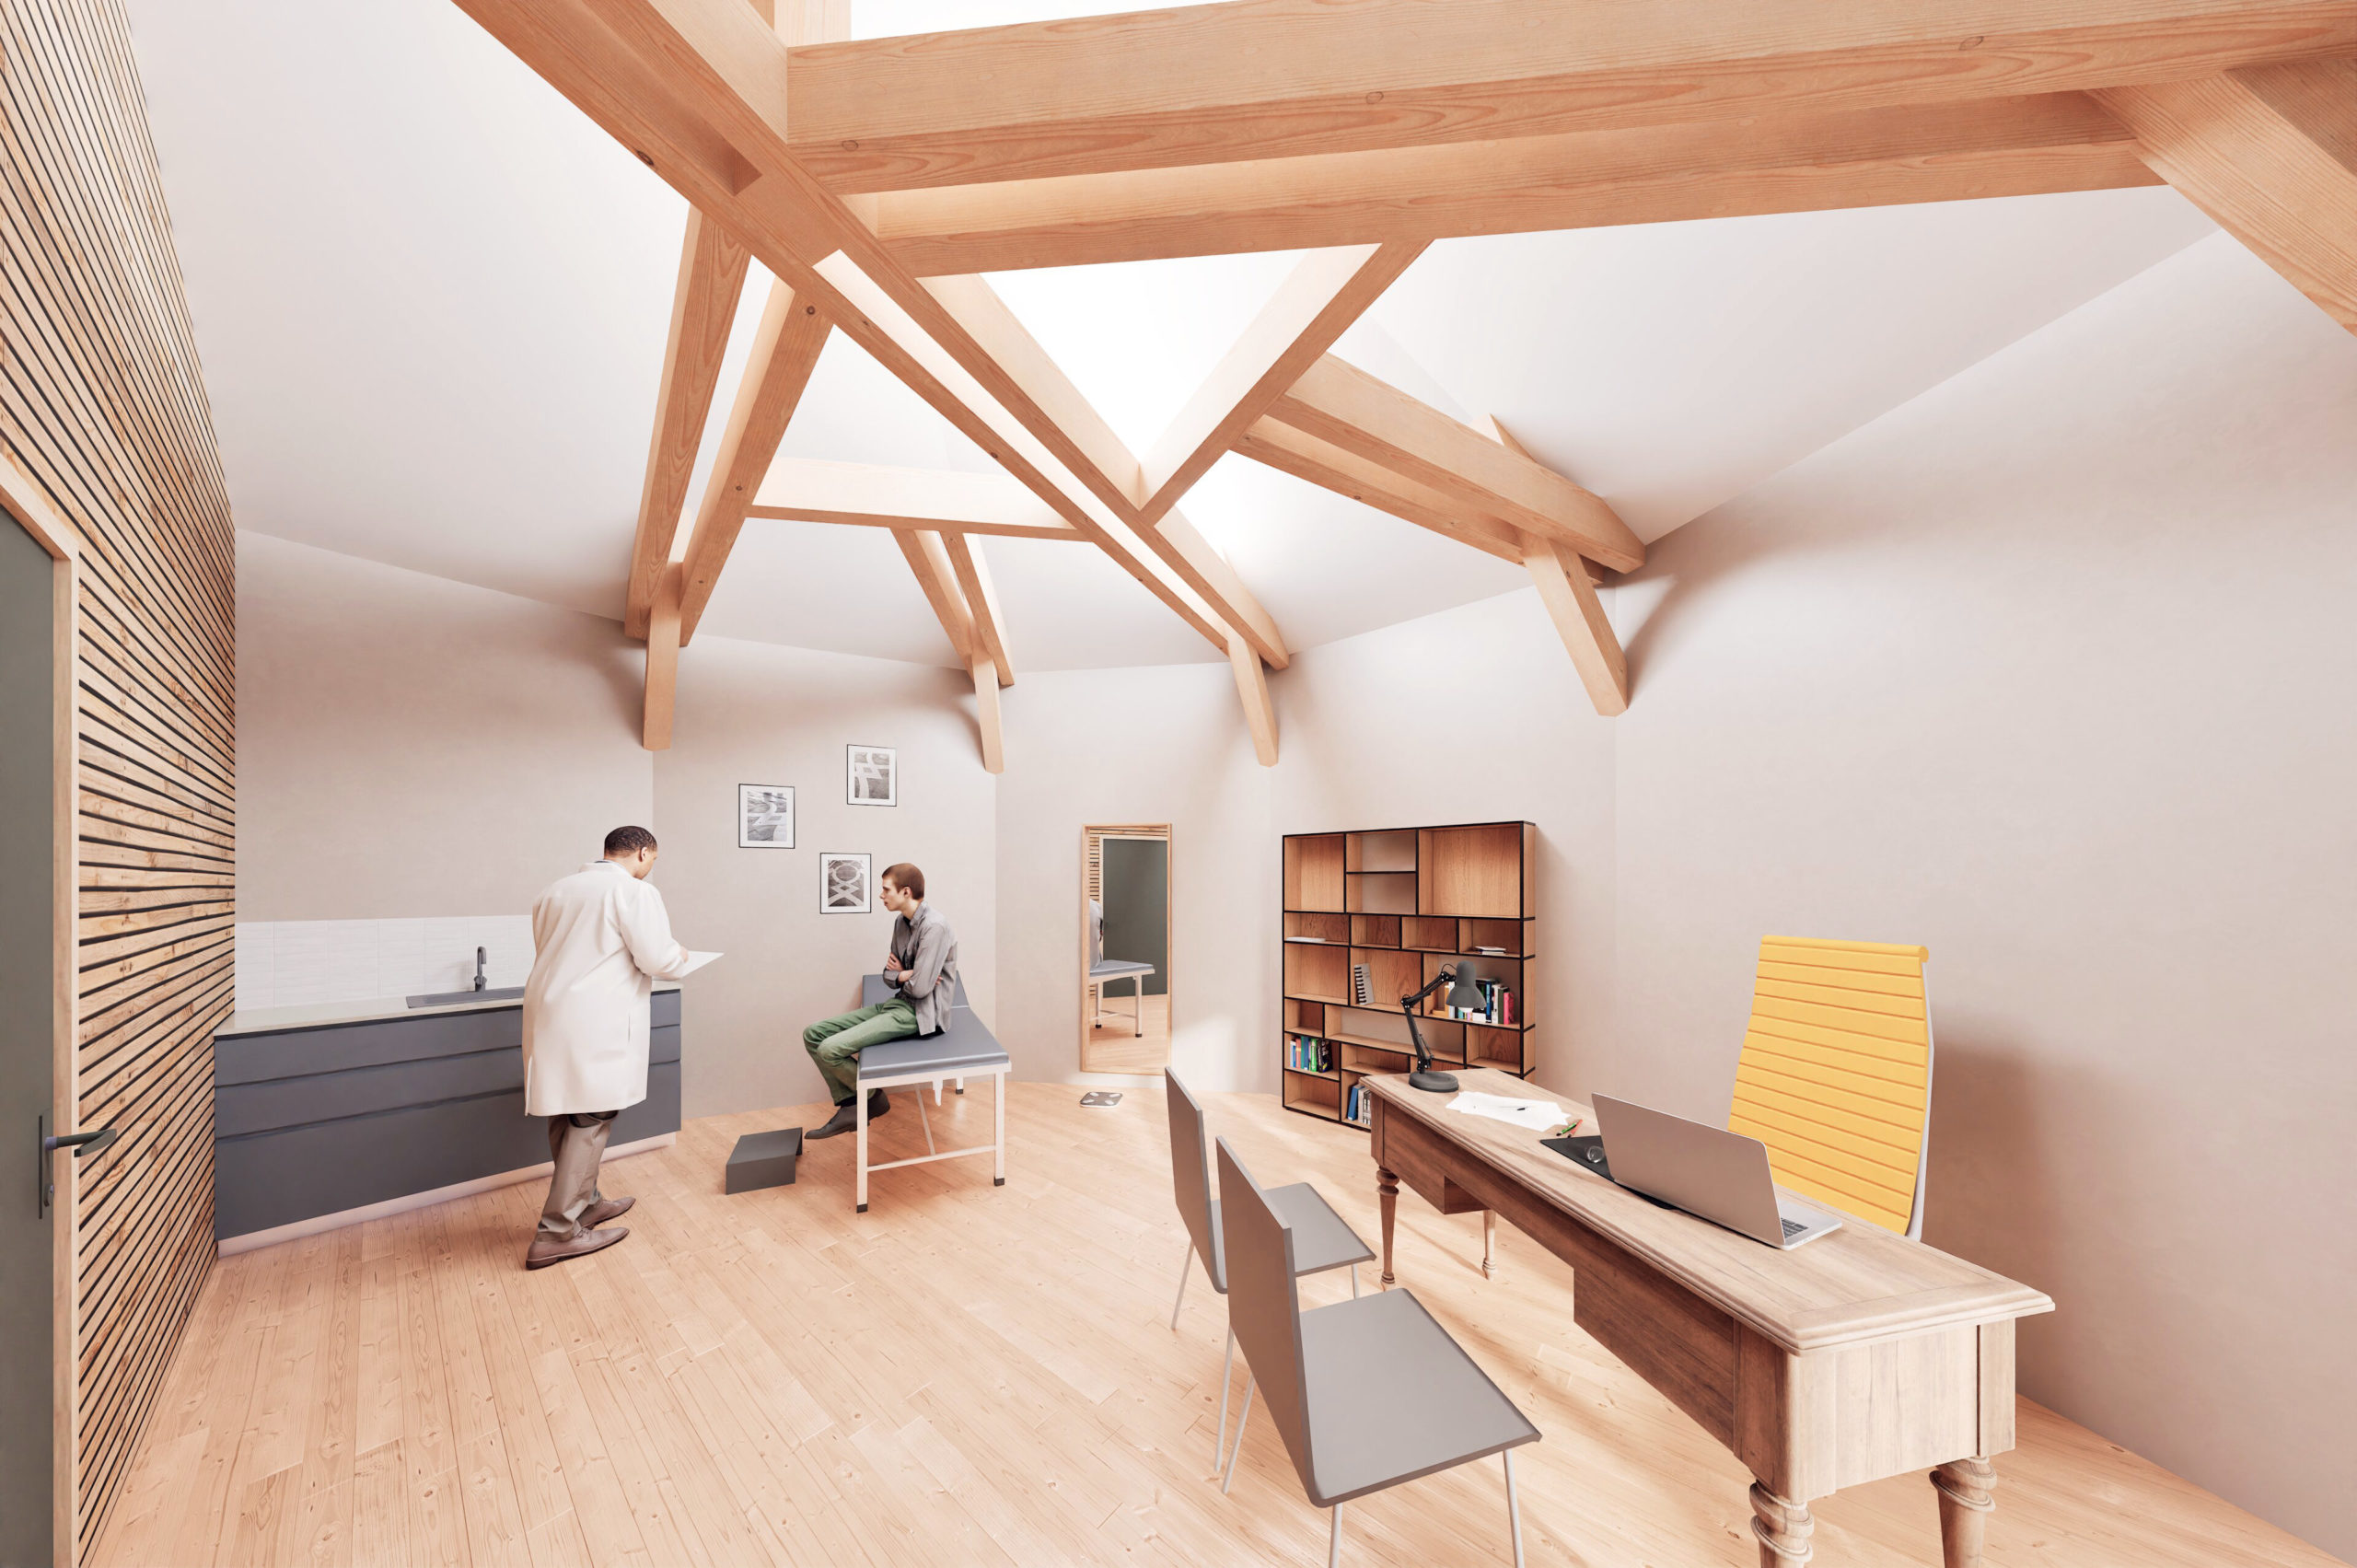 La maison Tori est un projet d'étude d'une maison éco-conçue. Elle est construite en bois et en matériaux bio sourcés. Conception Robin DENIS Architecte.